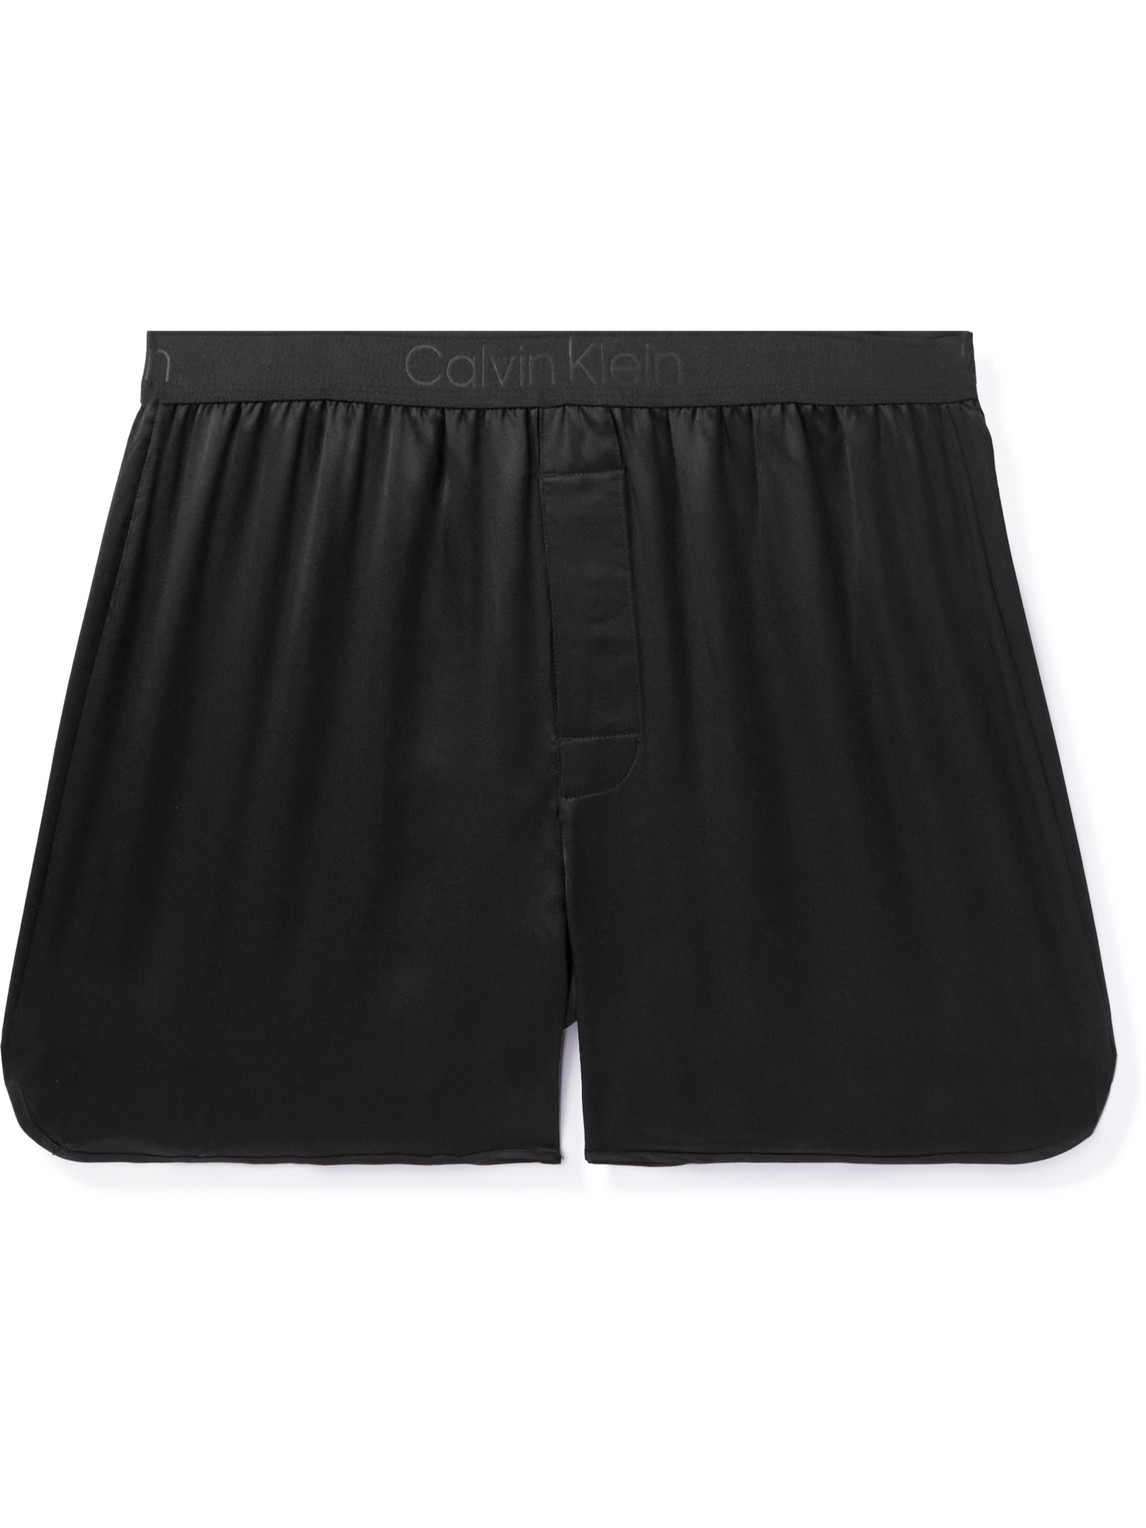 Calvin Klein Underwear Silk Boxer Shorts In Black